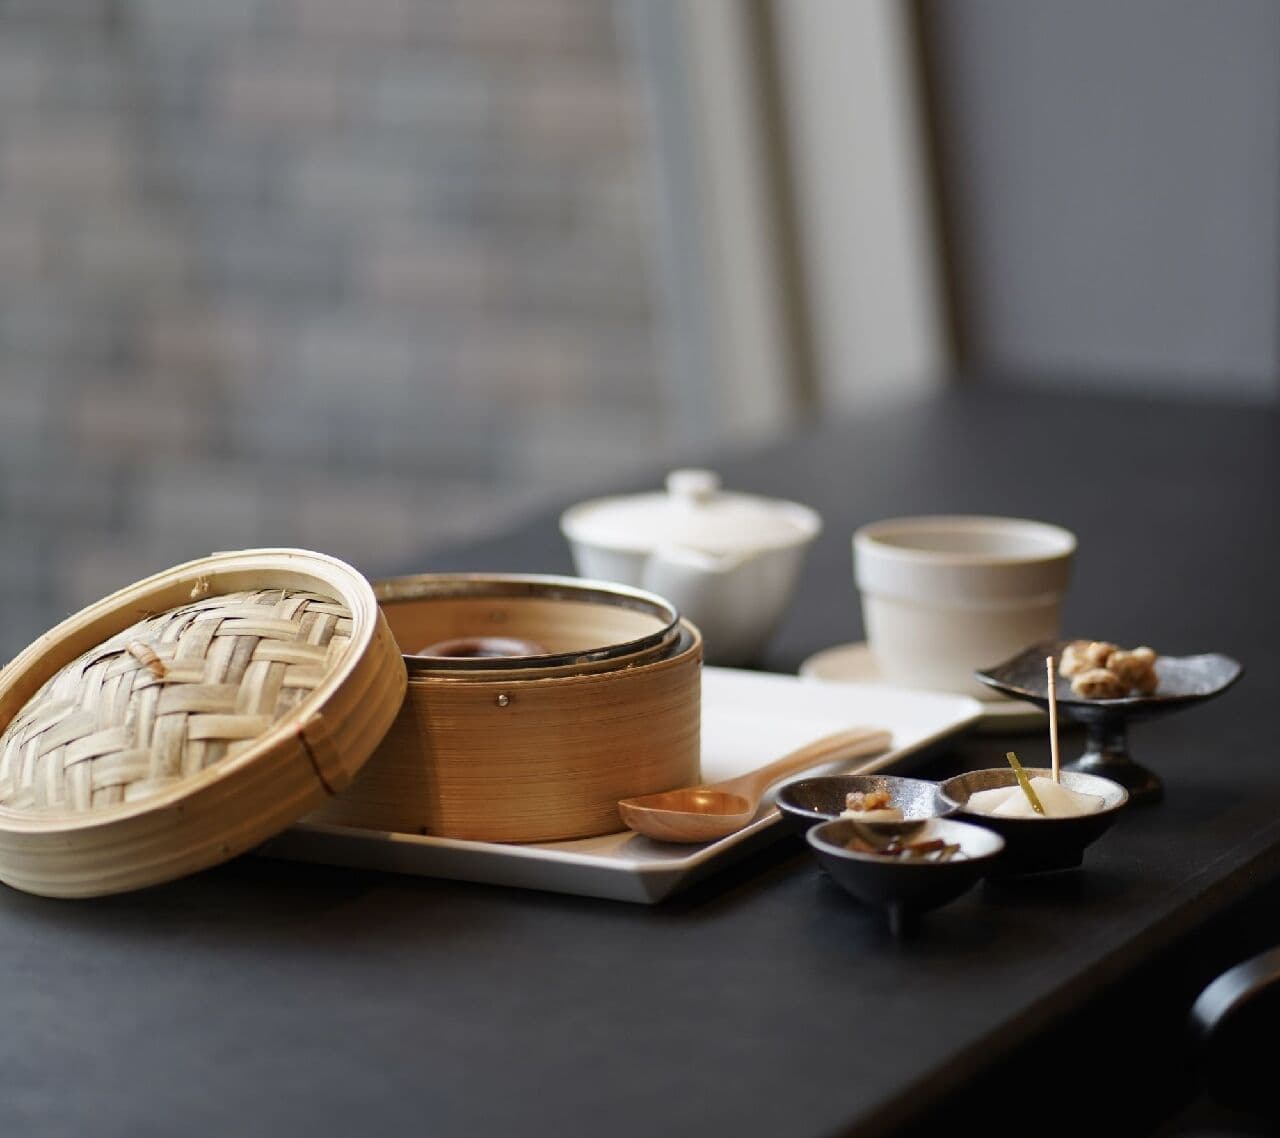 旬菓茶舎日と時季 カフェでは日本茶と和菓子のコース 絶品和菓子と厳選された日本茶を提供